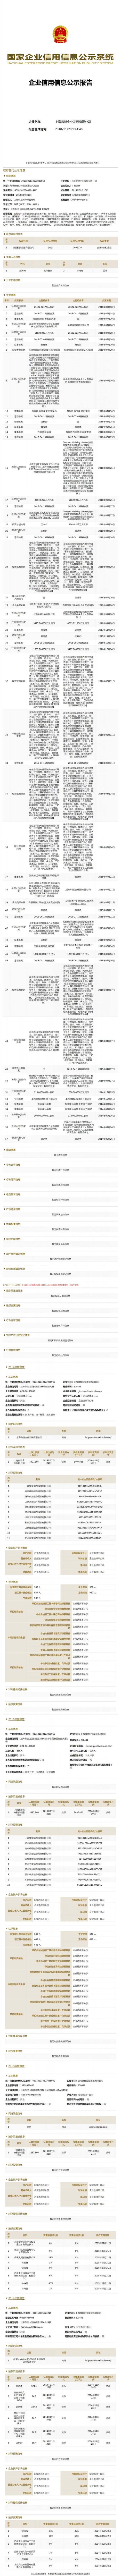 conew_上海微盟企业发展有限公司 (1)